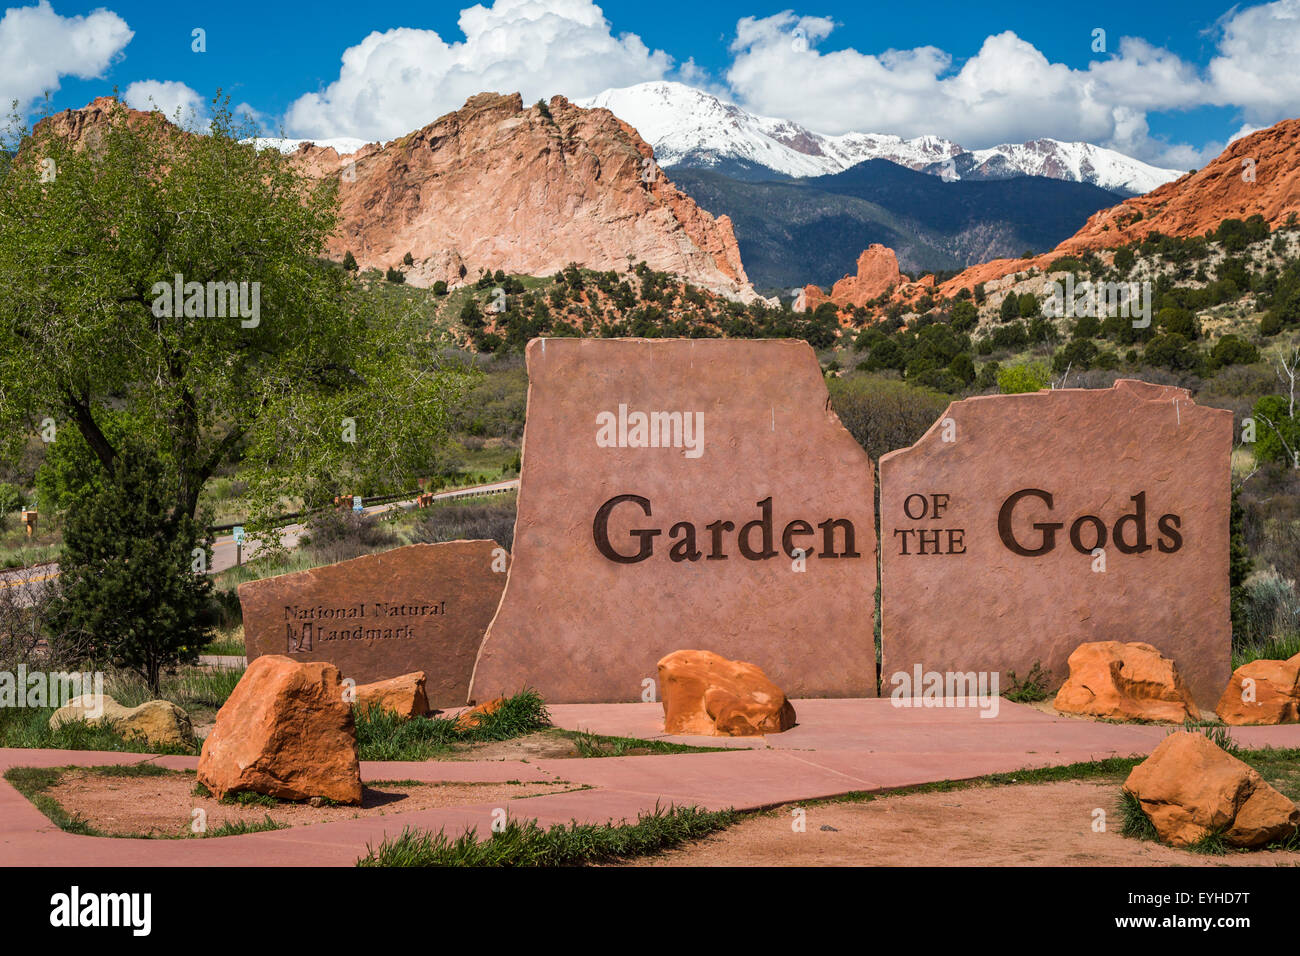 The Garden of the Gods National Natural Landmark sign near Colorado springs, Colorado, USA. Stock Photo